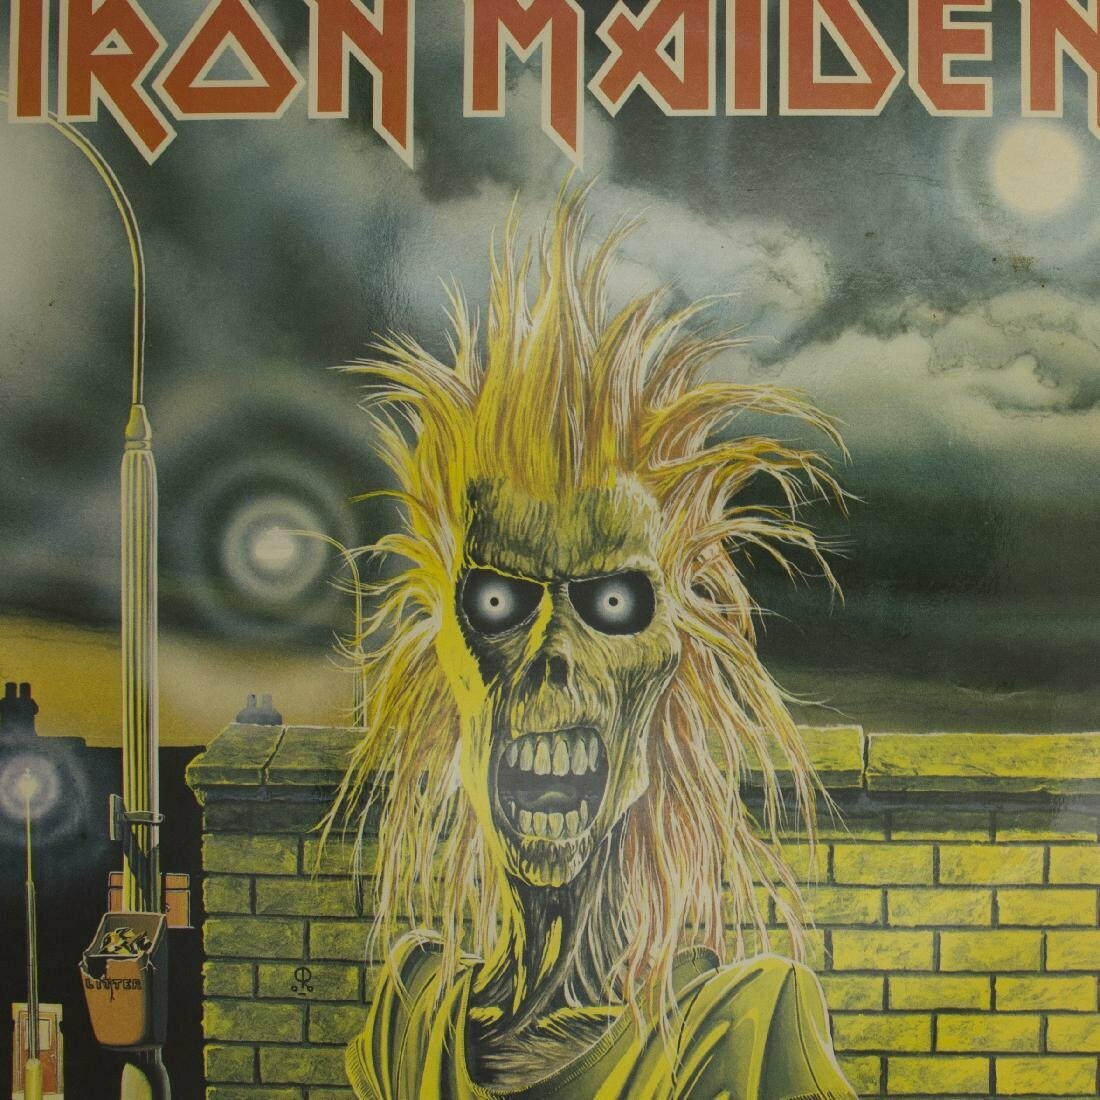 Виниловая пластинка Iron Maiden - Iron Maiden (LP)